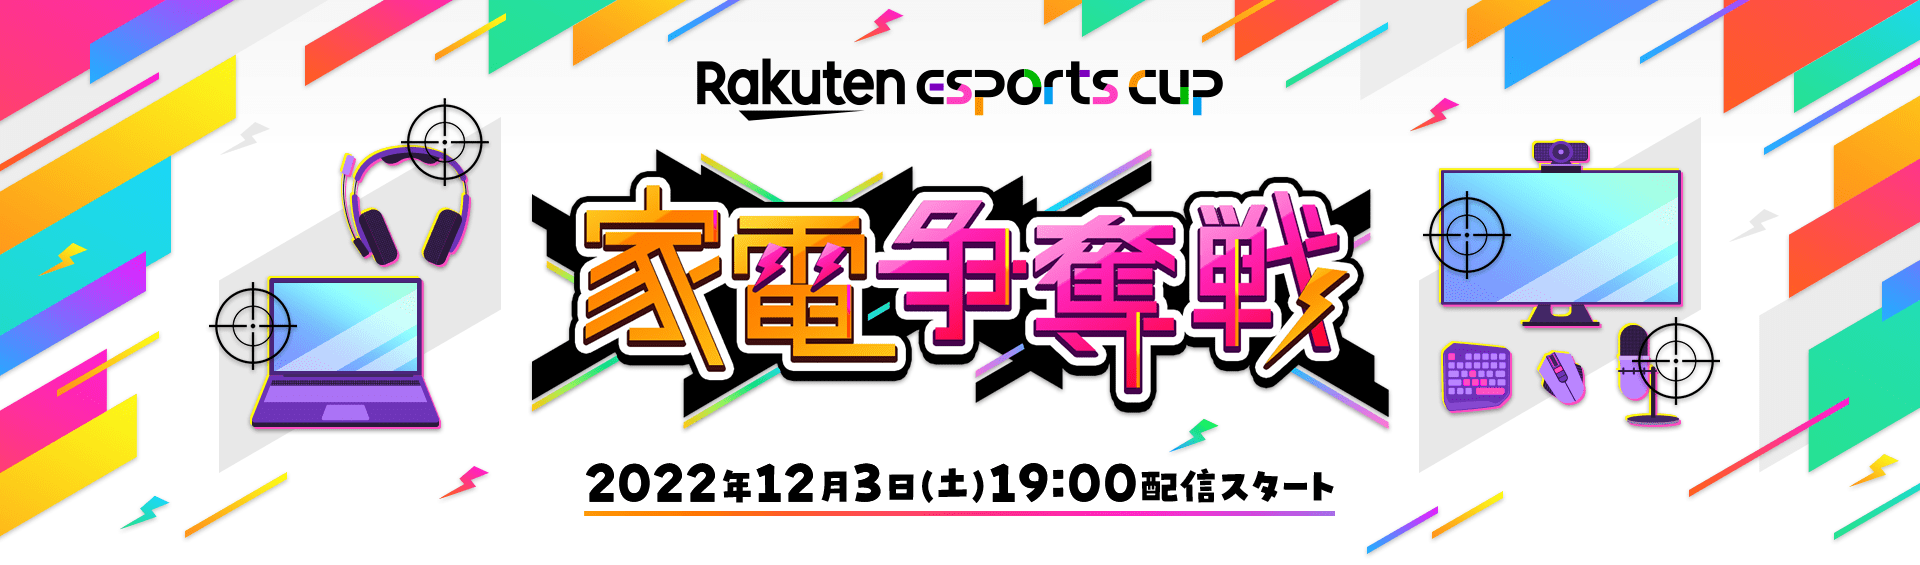 【大会情報】Rakuten esports cup～家電争奪戦～【2022年12月3日】